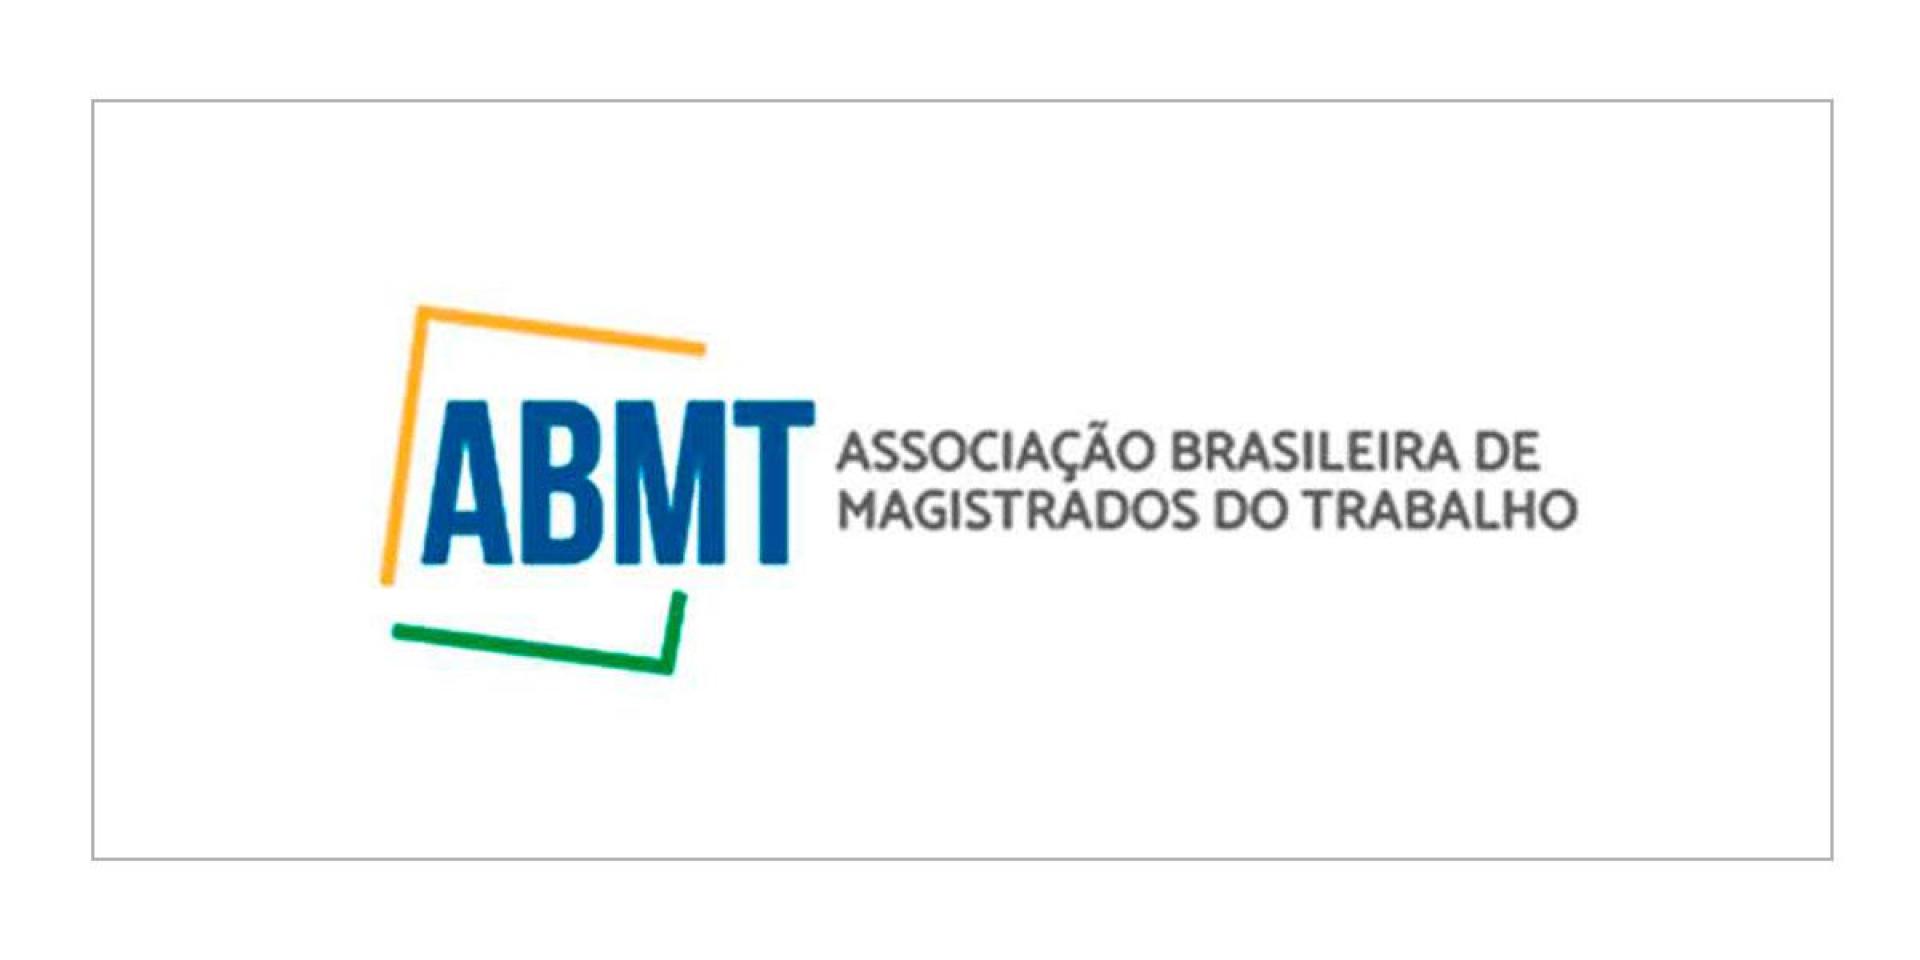 ABMT - Associação Brasileira de Magistrados do Trabalho